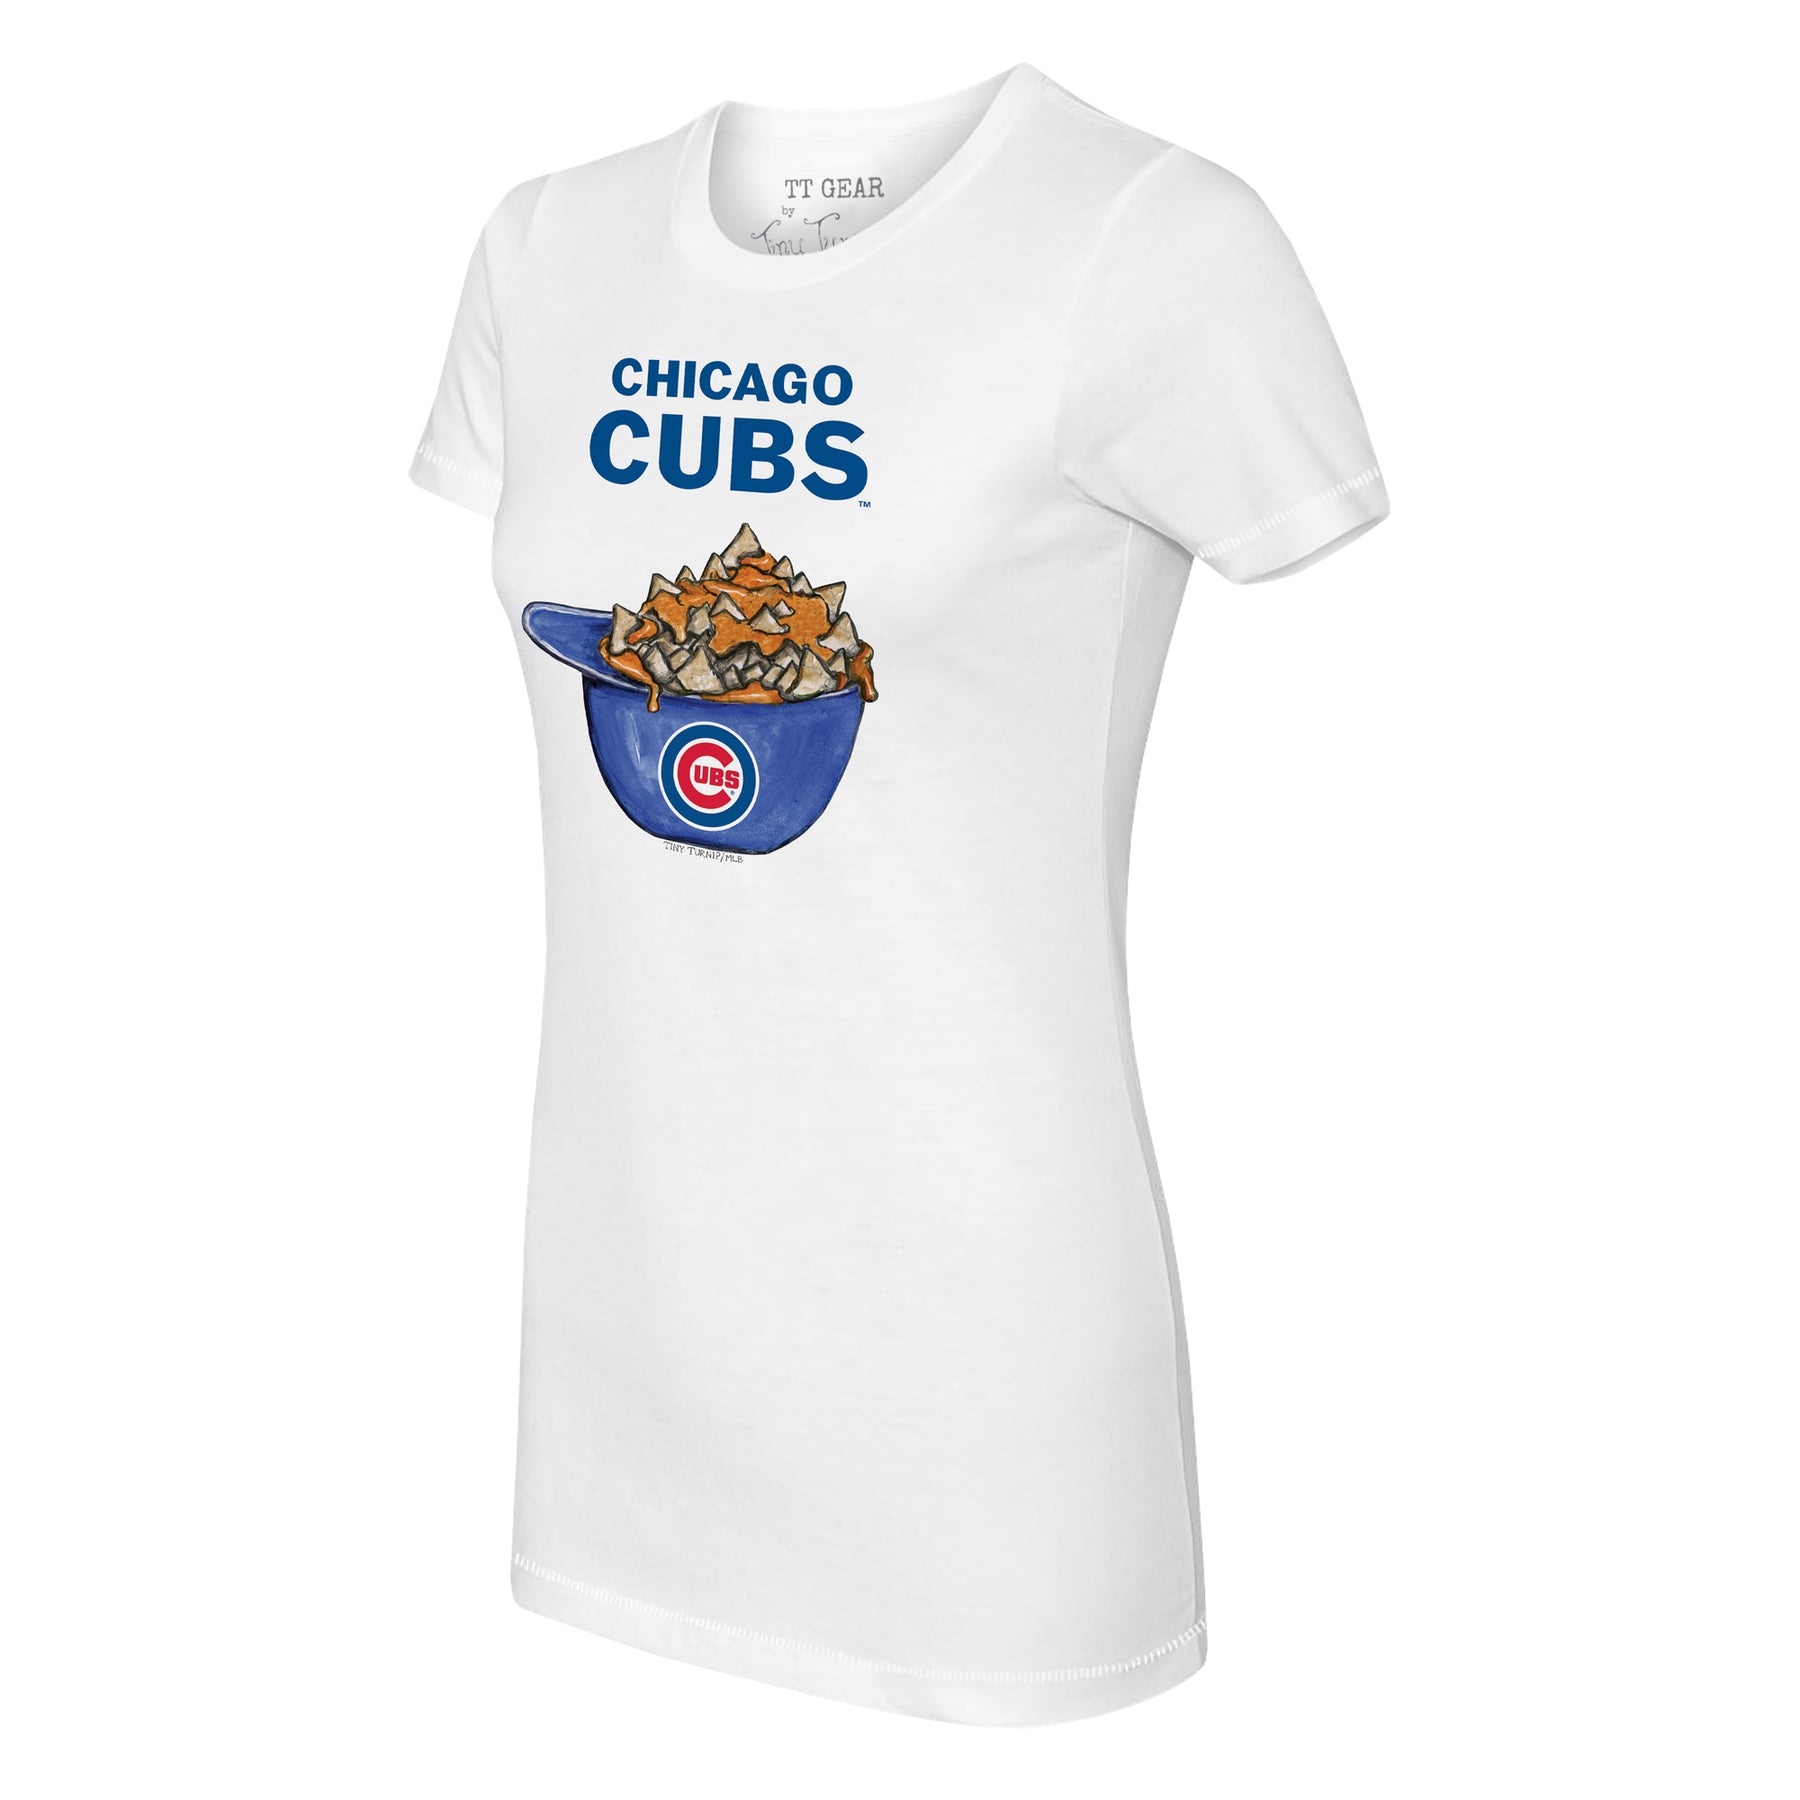 Chicago Cubs Tiny Turnip Infant TT Rex T-Shirt - Royal